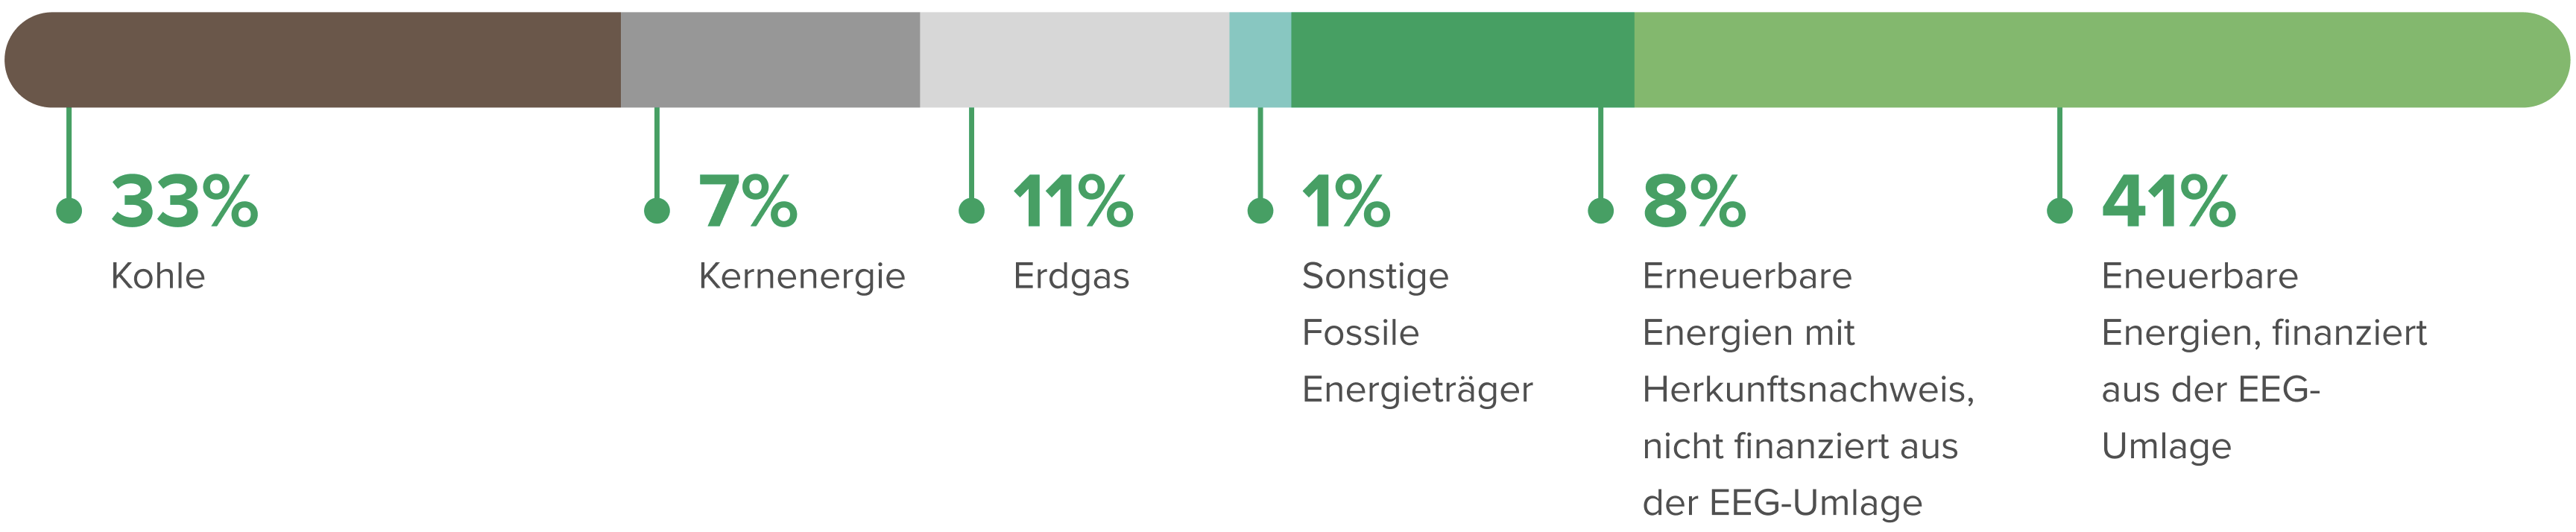 Strommix in Deutschland als Streifendiagramm für Strom Herkunft und Erneuerbare Energien